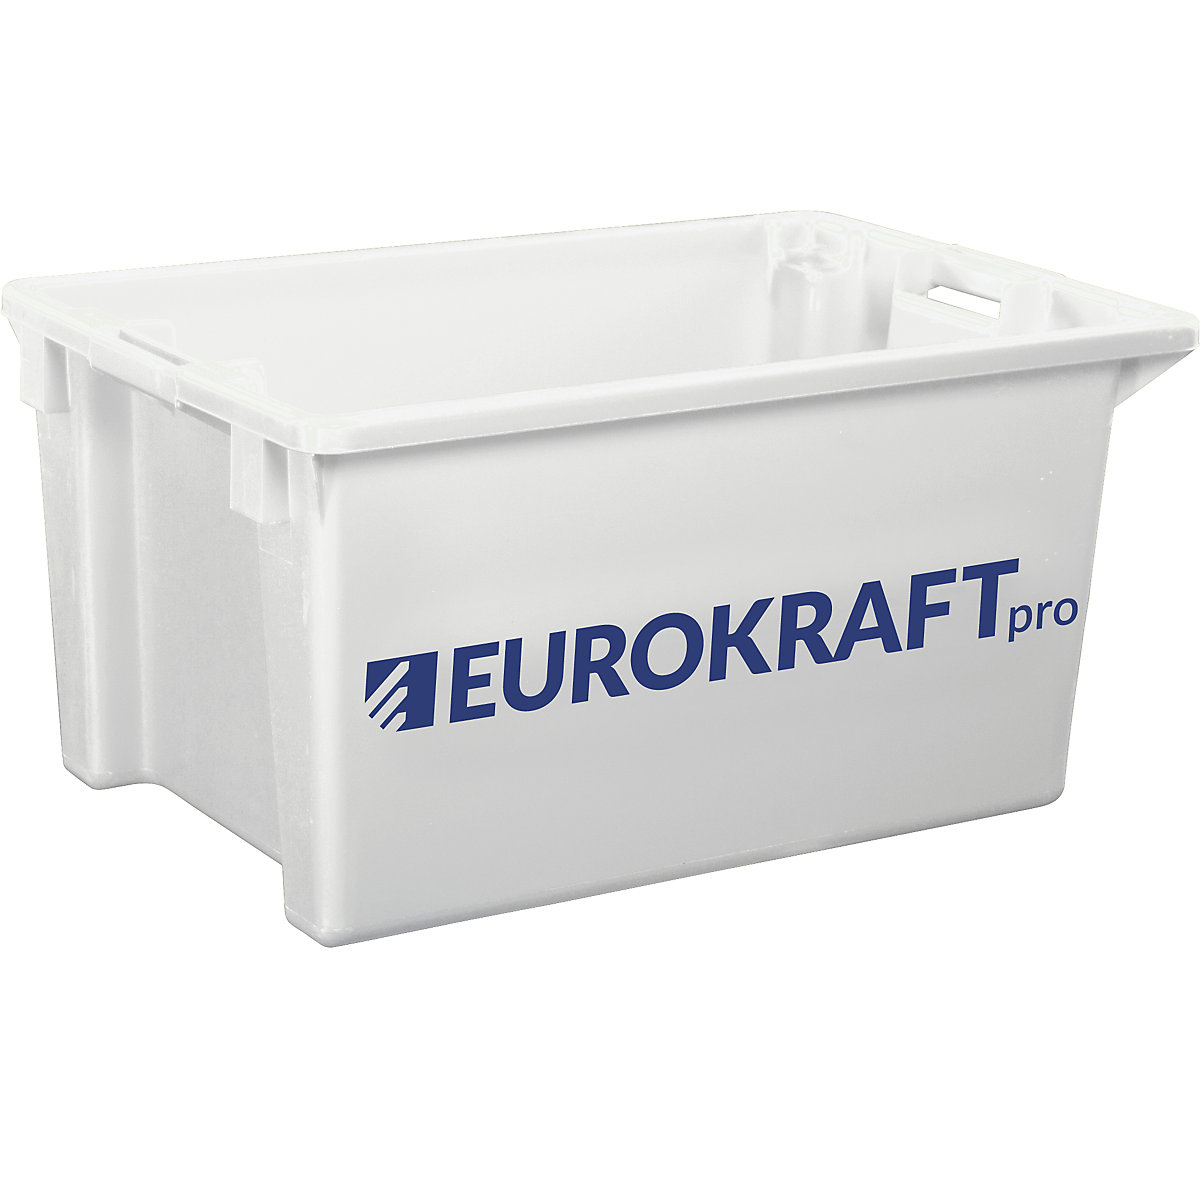 EUROKRAFTpro – Otočná stohovací nádoba z polypropylenu vhodného pro potraviny, obsah 70 litrů, bal.j. 2 ks, stěny a dno plné, přírodní